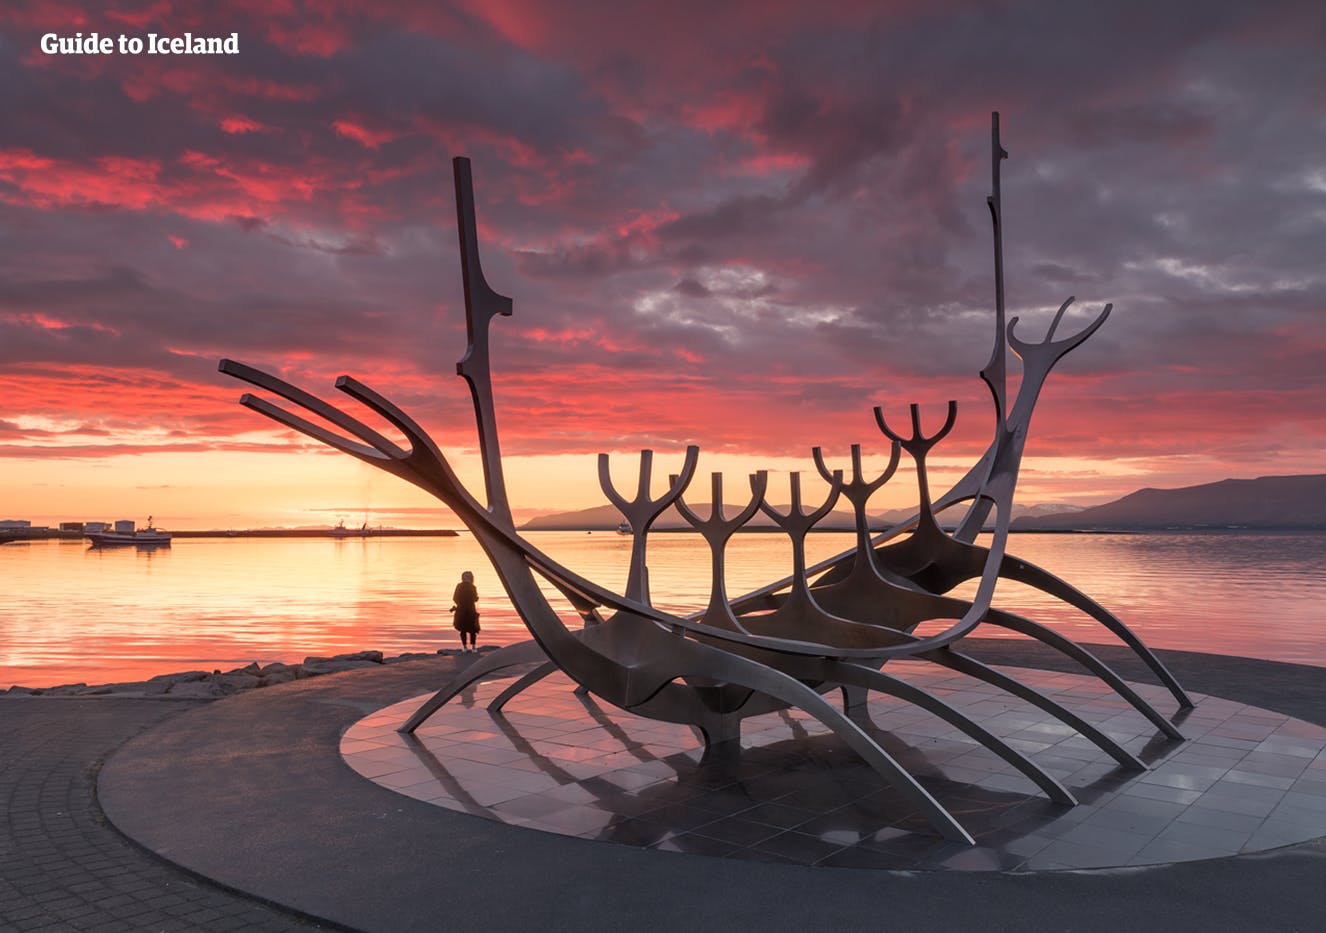 矗立海边的太阳航海者是冰岛首都雷克雅未克的地标景点之一